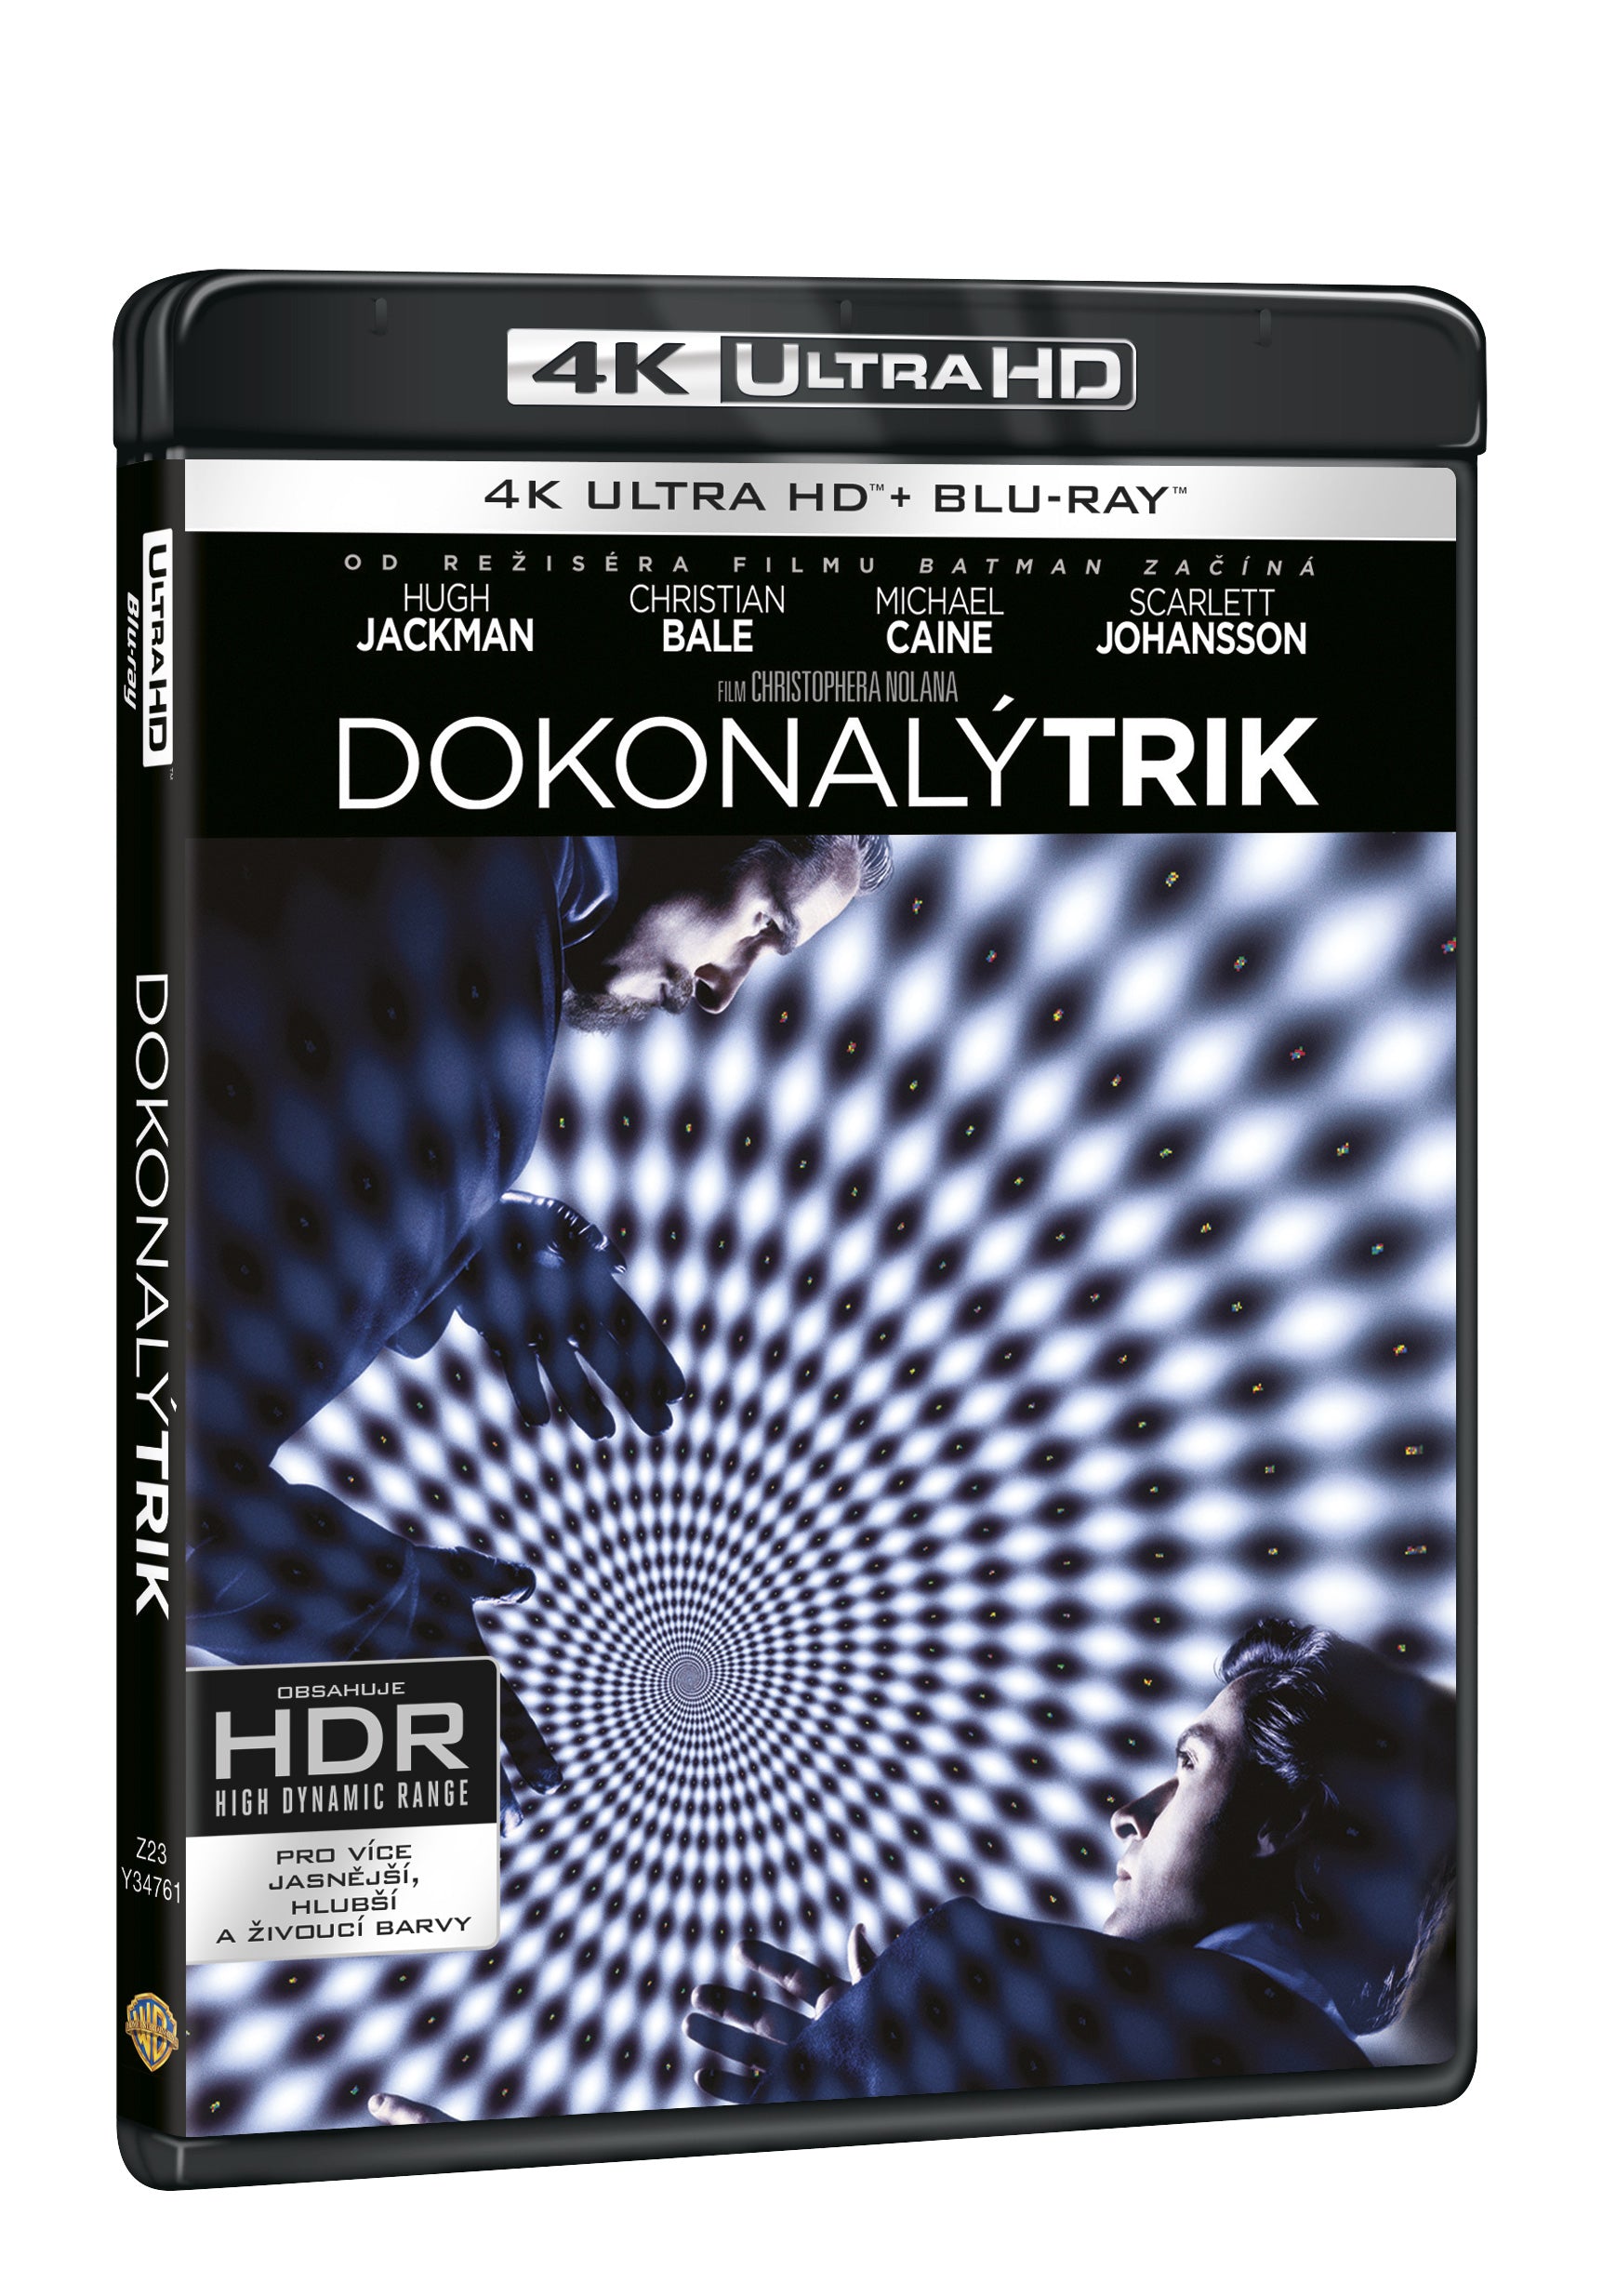 Dokonaly trik 3BD (UHD+BD+bonus disk) / The Prestige - Czech version